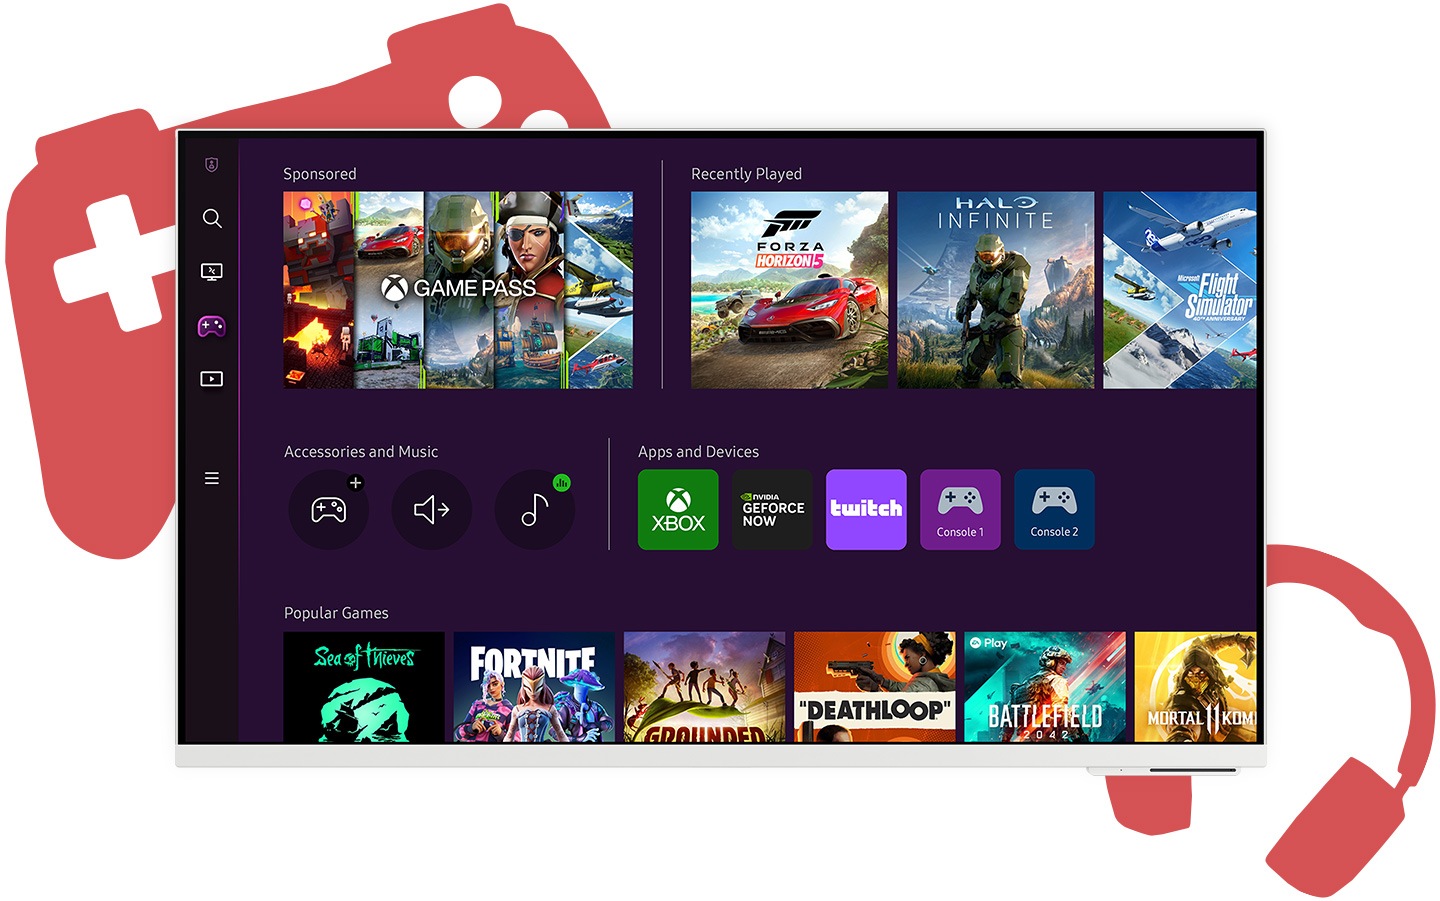 Ein Bildschirm zeigt den Startbildschirm des Gaming-Hubs mit mehreren Spielen und Apps, die zum Herunterladen zur Verfügung stehen.